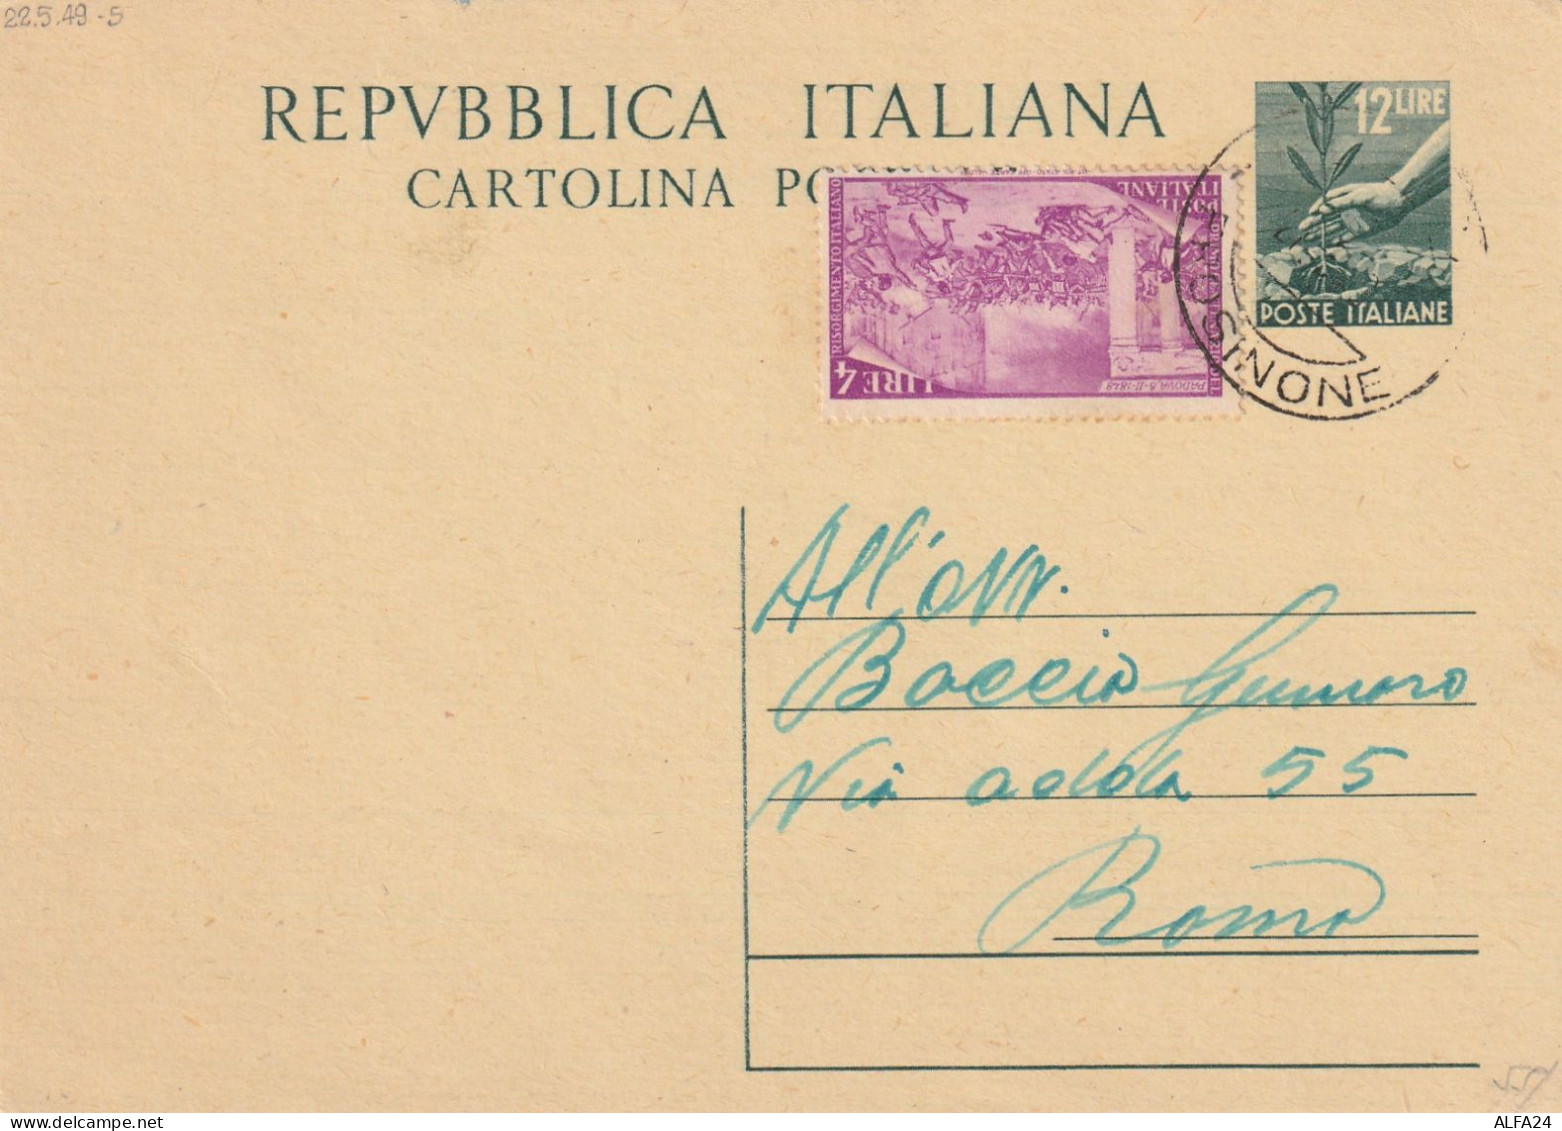 INTERO POSTALE 1949 L.12+4 RISORGIMENTO TIMBRO FROSINONE (YK200 - Interi Postali